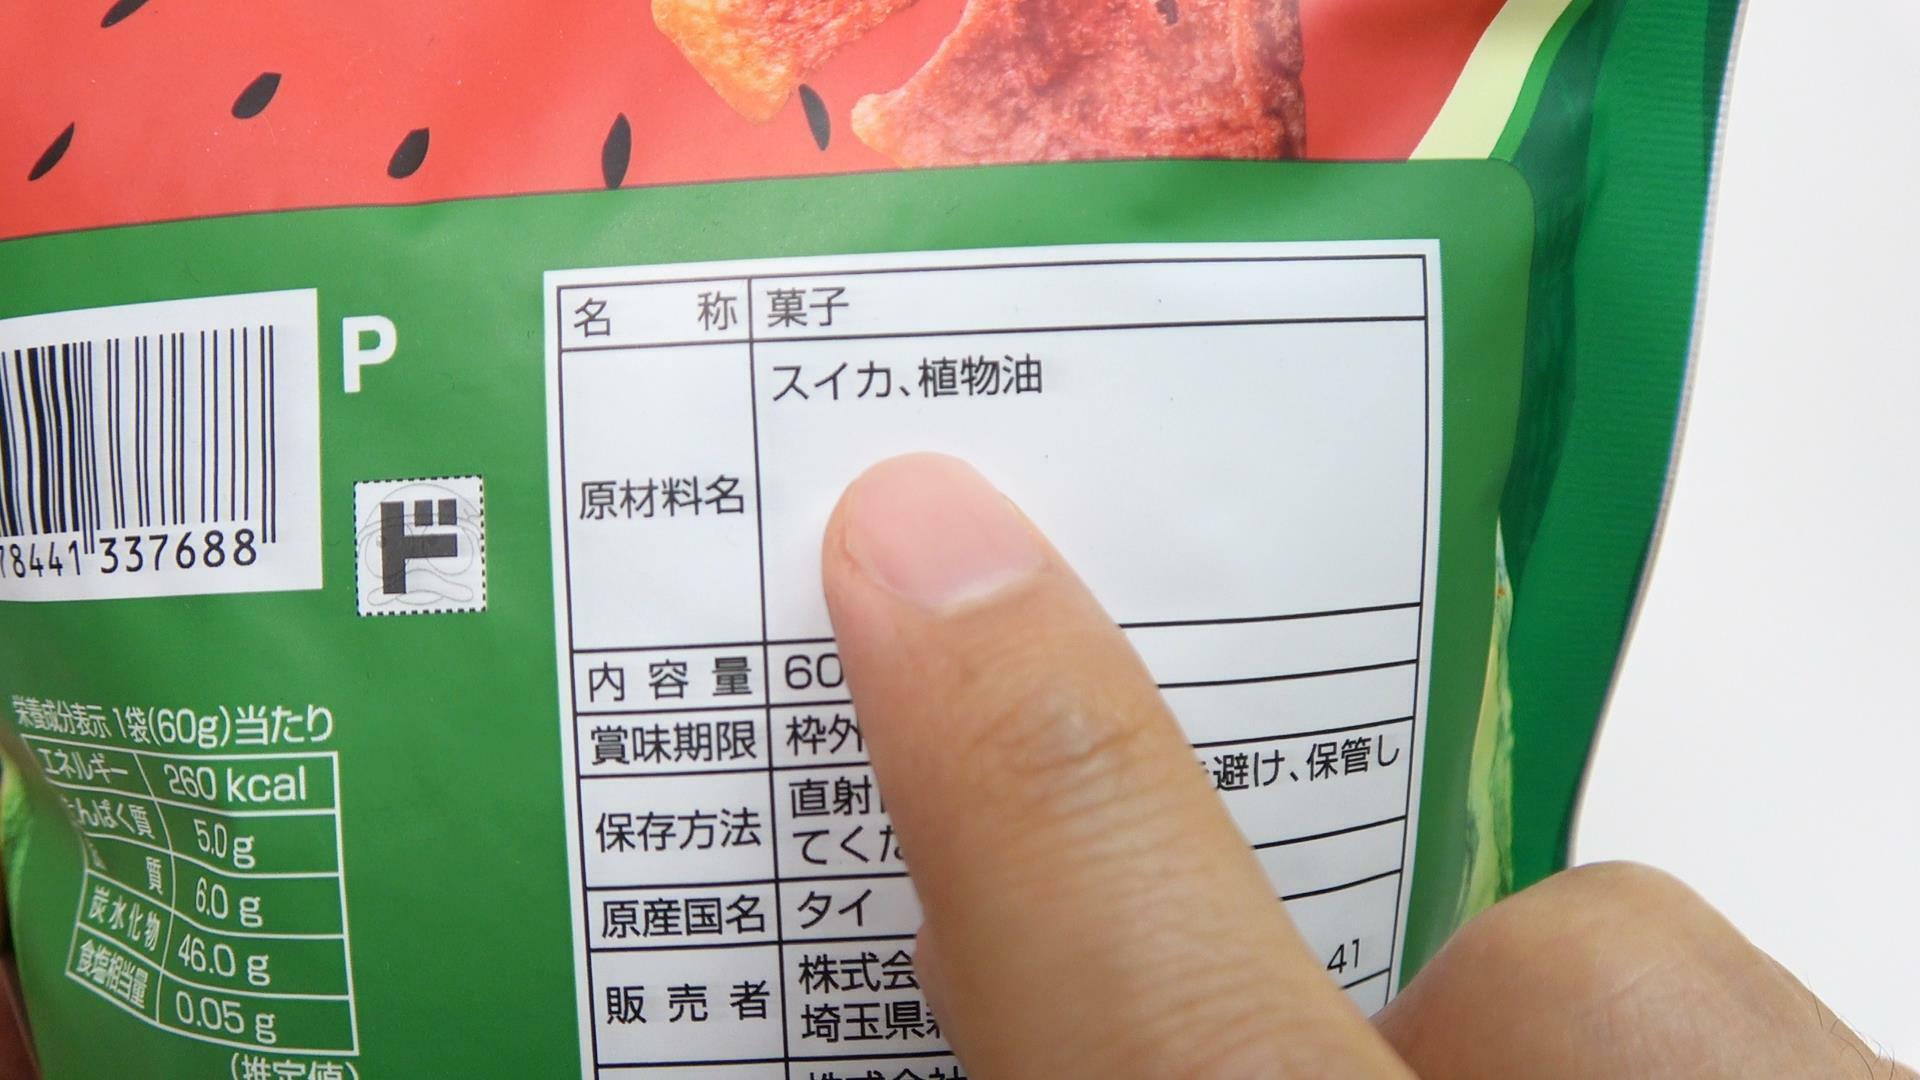 スイカチップスの原材料名　ちょっと見づらいですが写真左下に栄養成分表示もあります